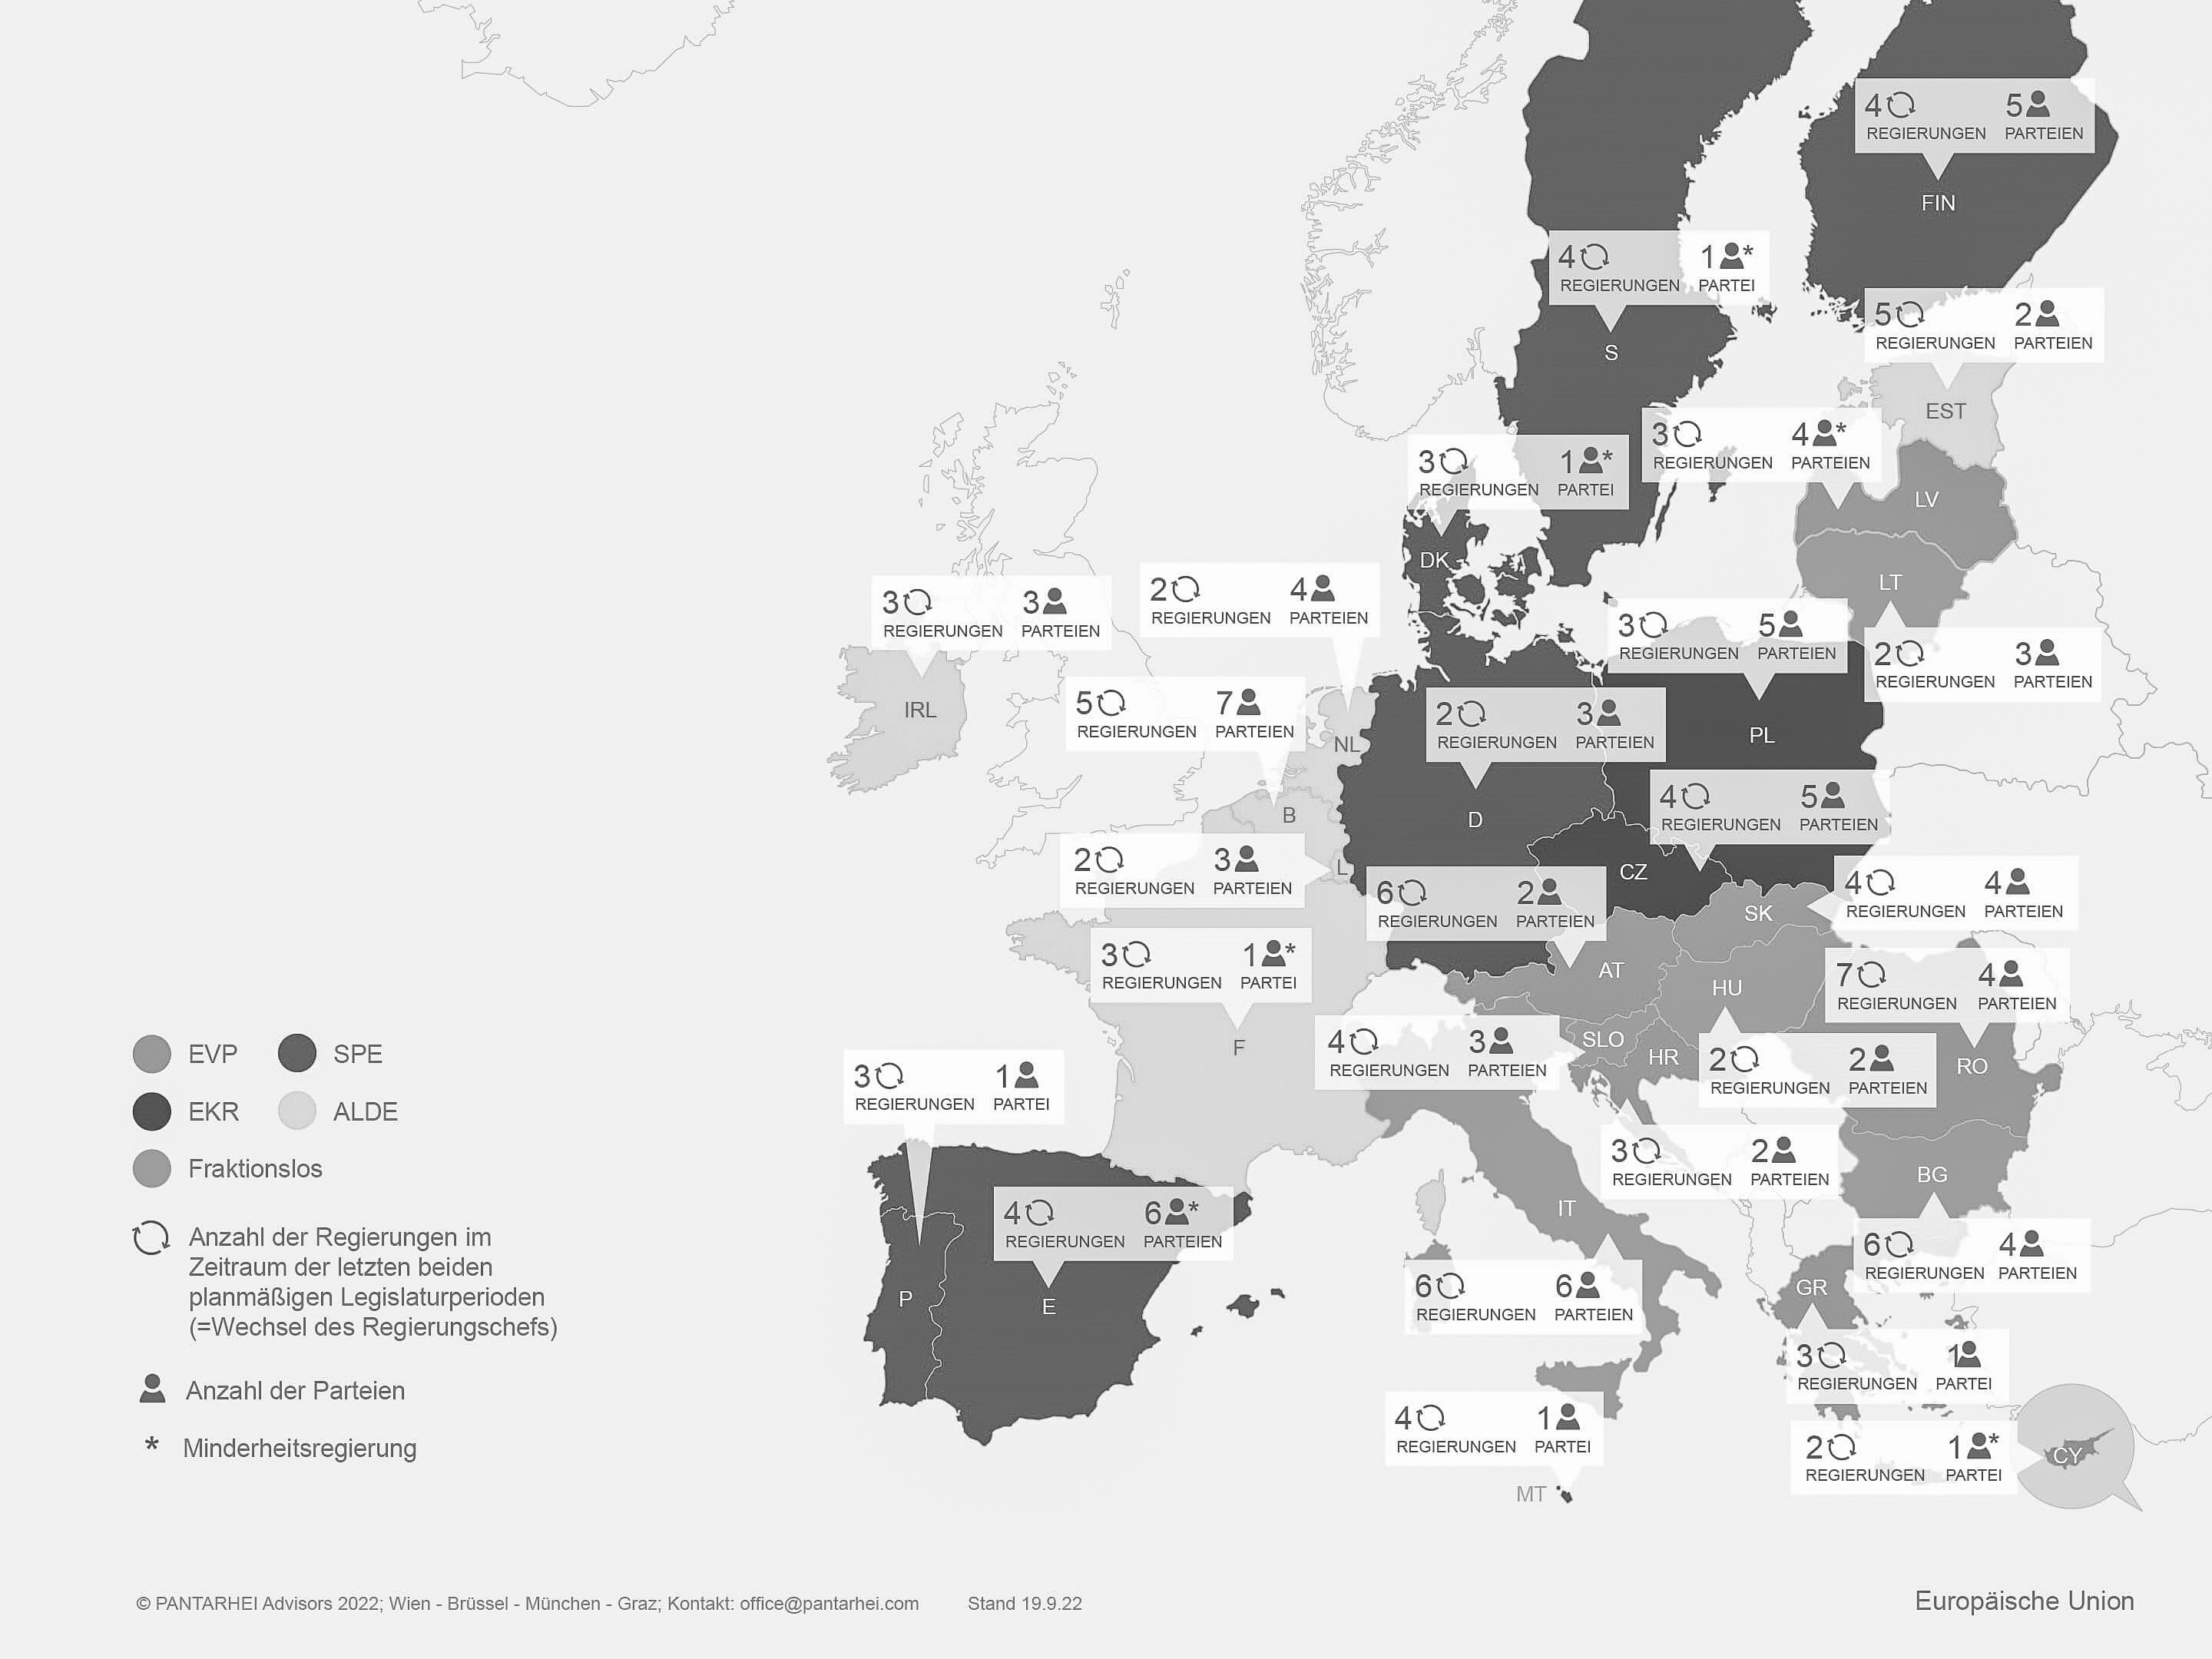 Landkarte von Europa mit anzahl der Regierungen und Partein aller Staaten